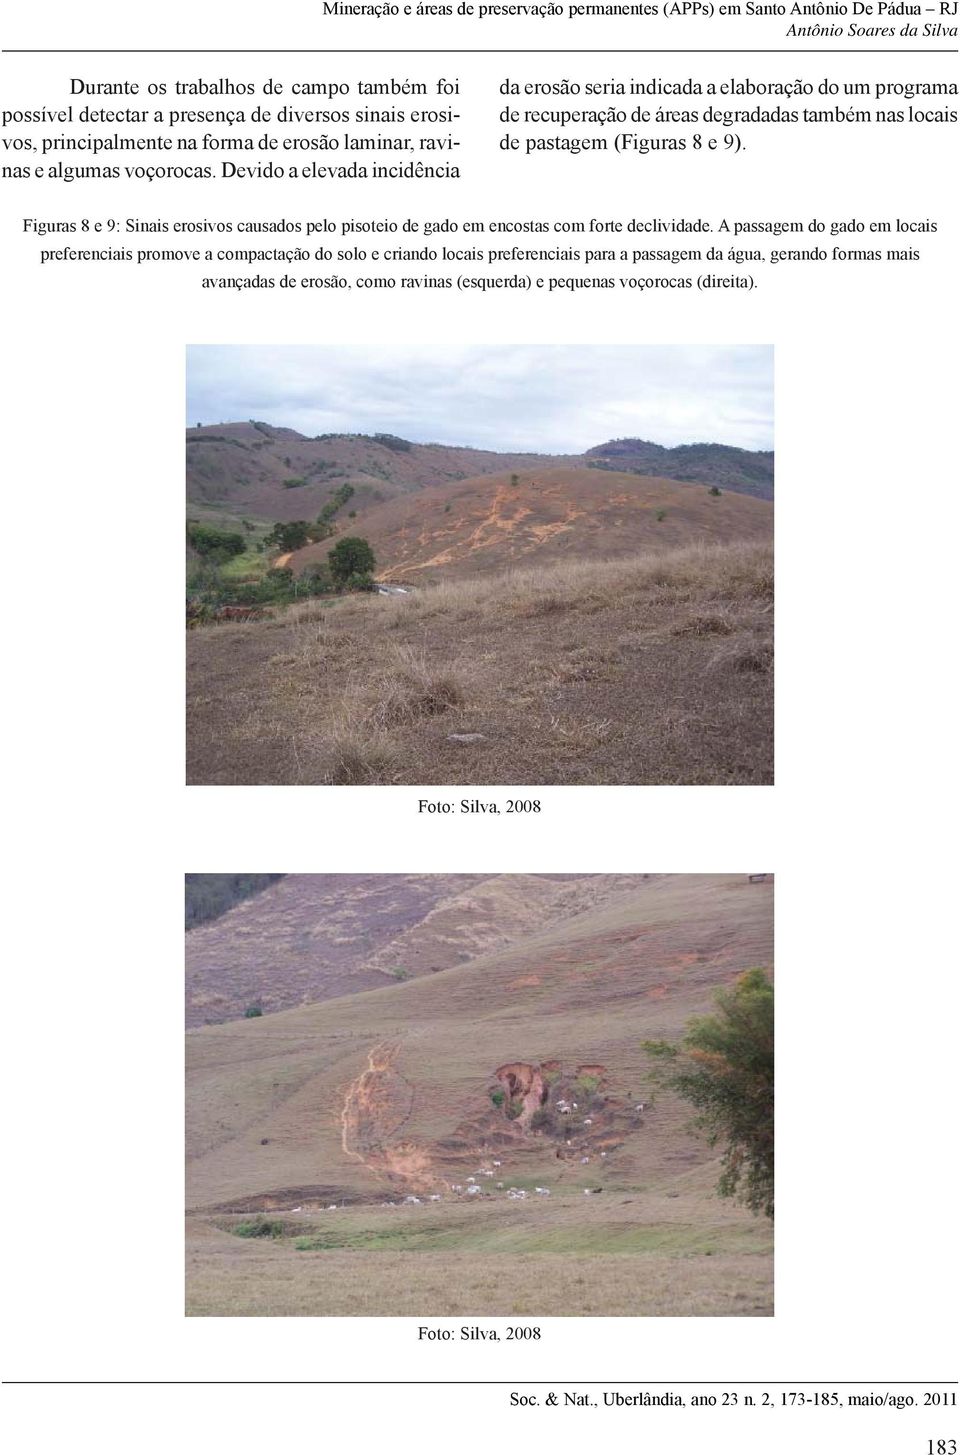 Devido a elevada incidência da erosão seria indicada a elaboração do um programa de recuperação de áreas degradadas também nas locais de pastagem (Figuras 8 e 9).